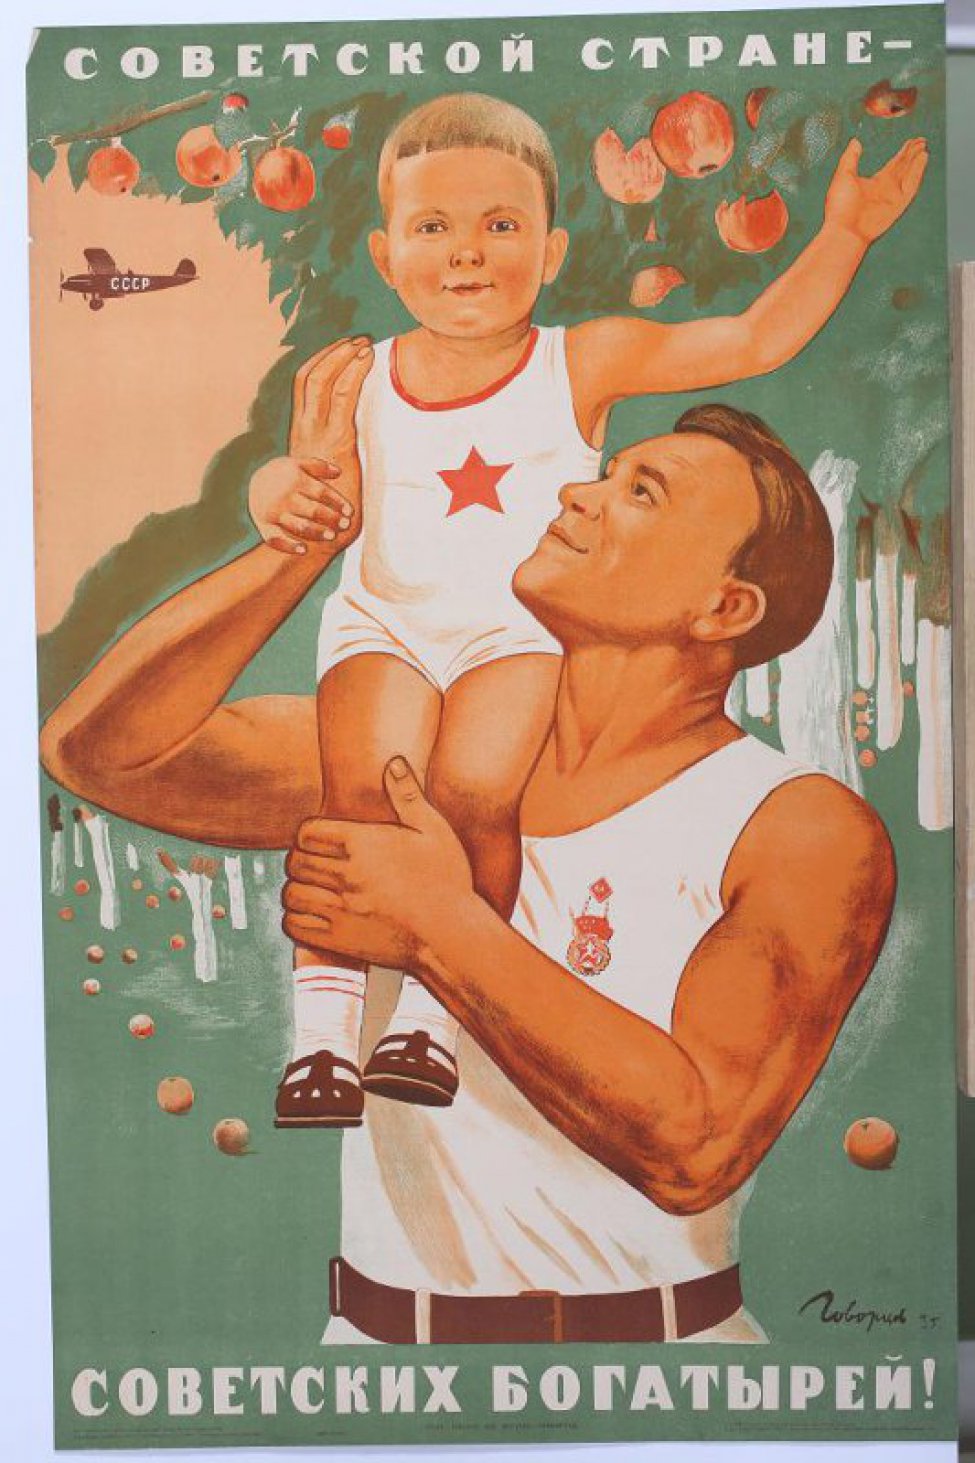 Изображен здоровый молодой мужчина в белой майке. На плече держит здорового красивого ребенка тоже в майке со звездой на груди.